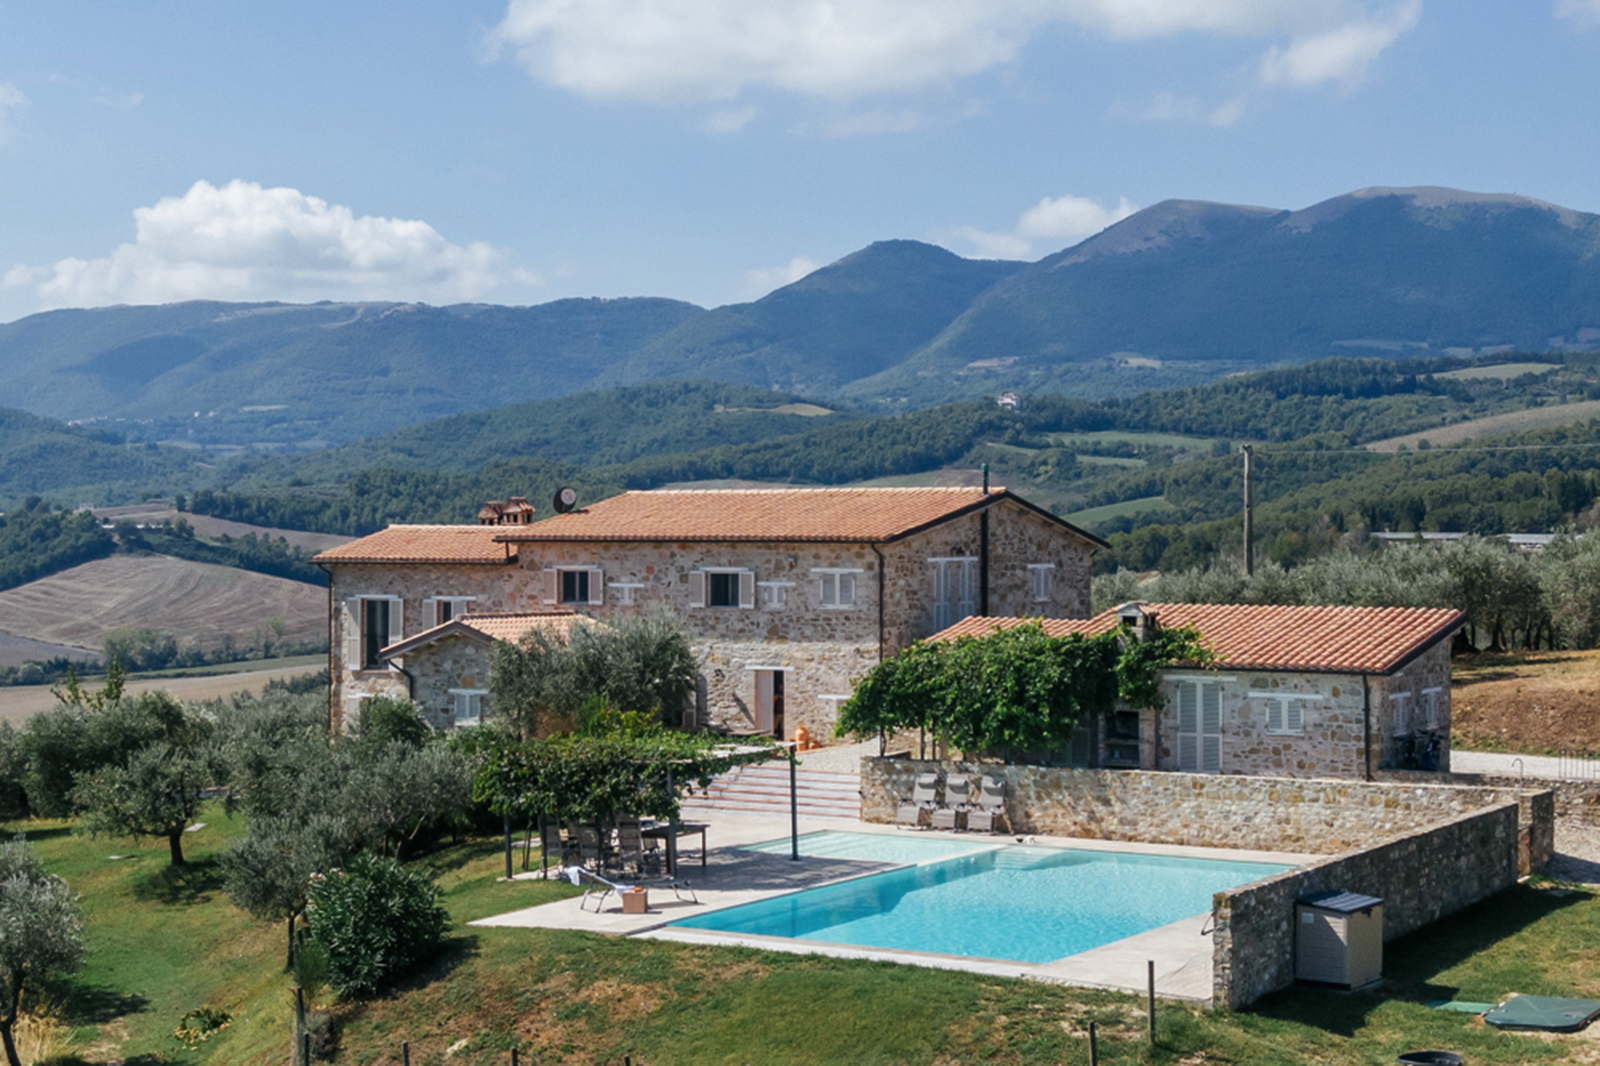 rental villa-holiday rental-vacation villa in Italy-Umbria-Castel Ritaldi